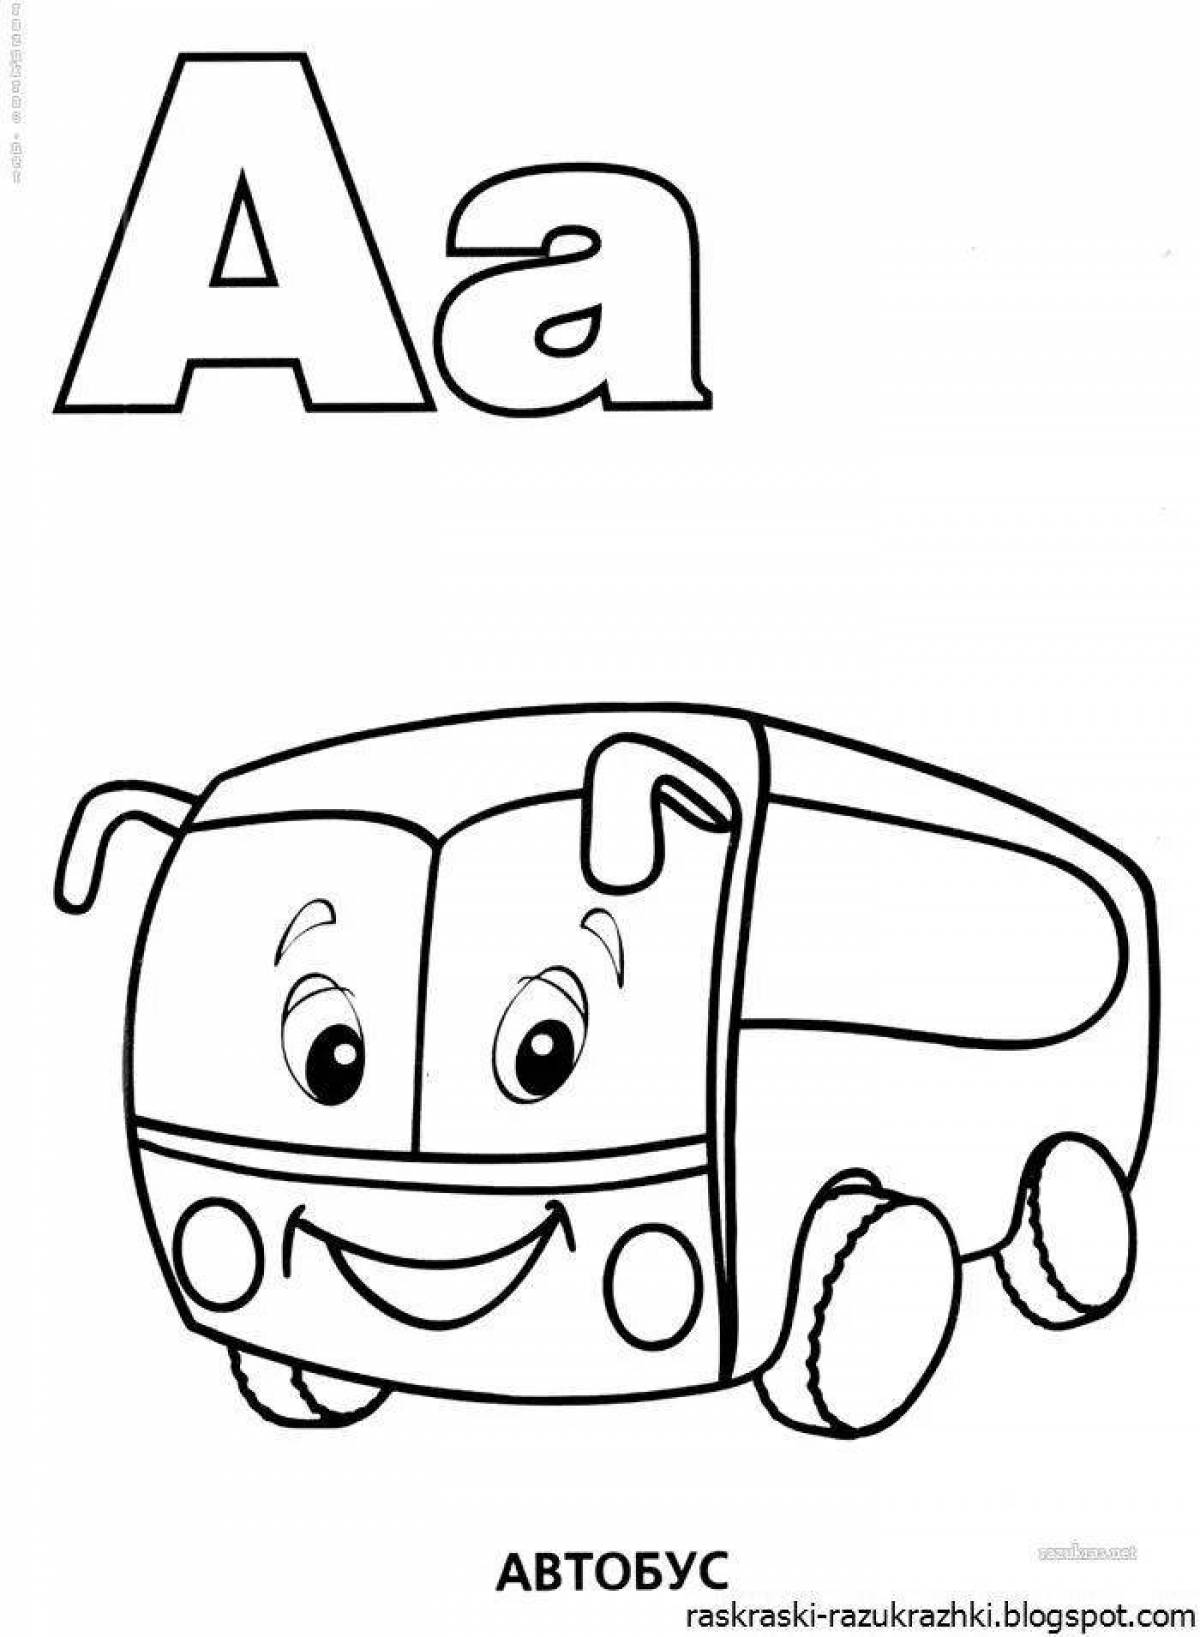 Увлекательная раскраска «алфавит» для детей